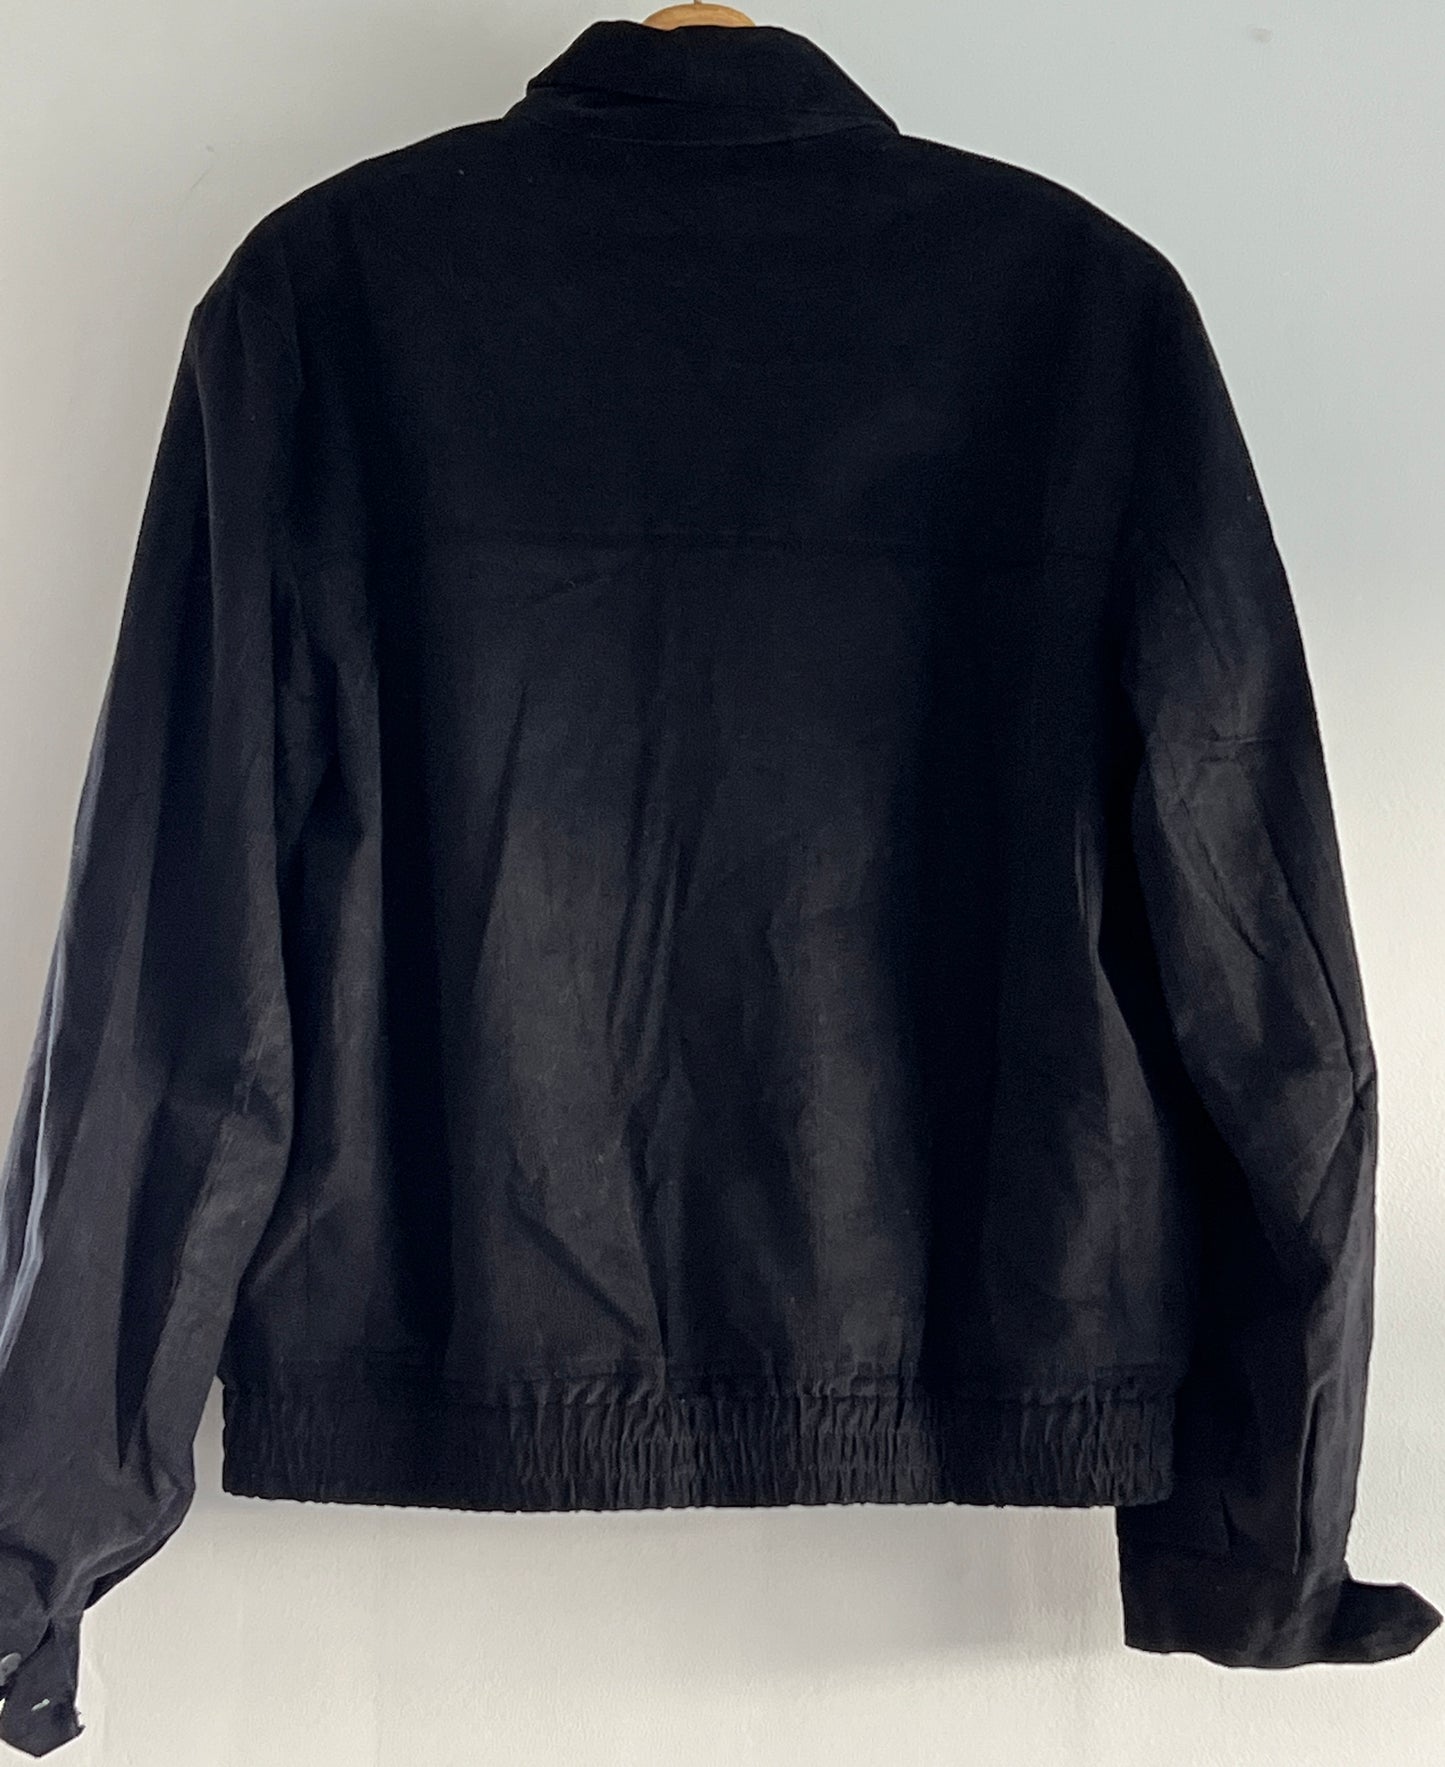 Mens 1950s vintage style Western cut gab jacket in black corduroy M to 2XL